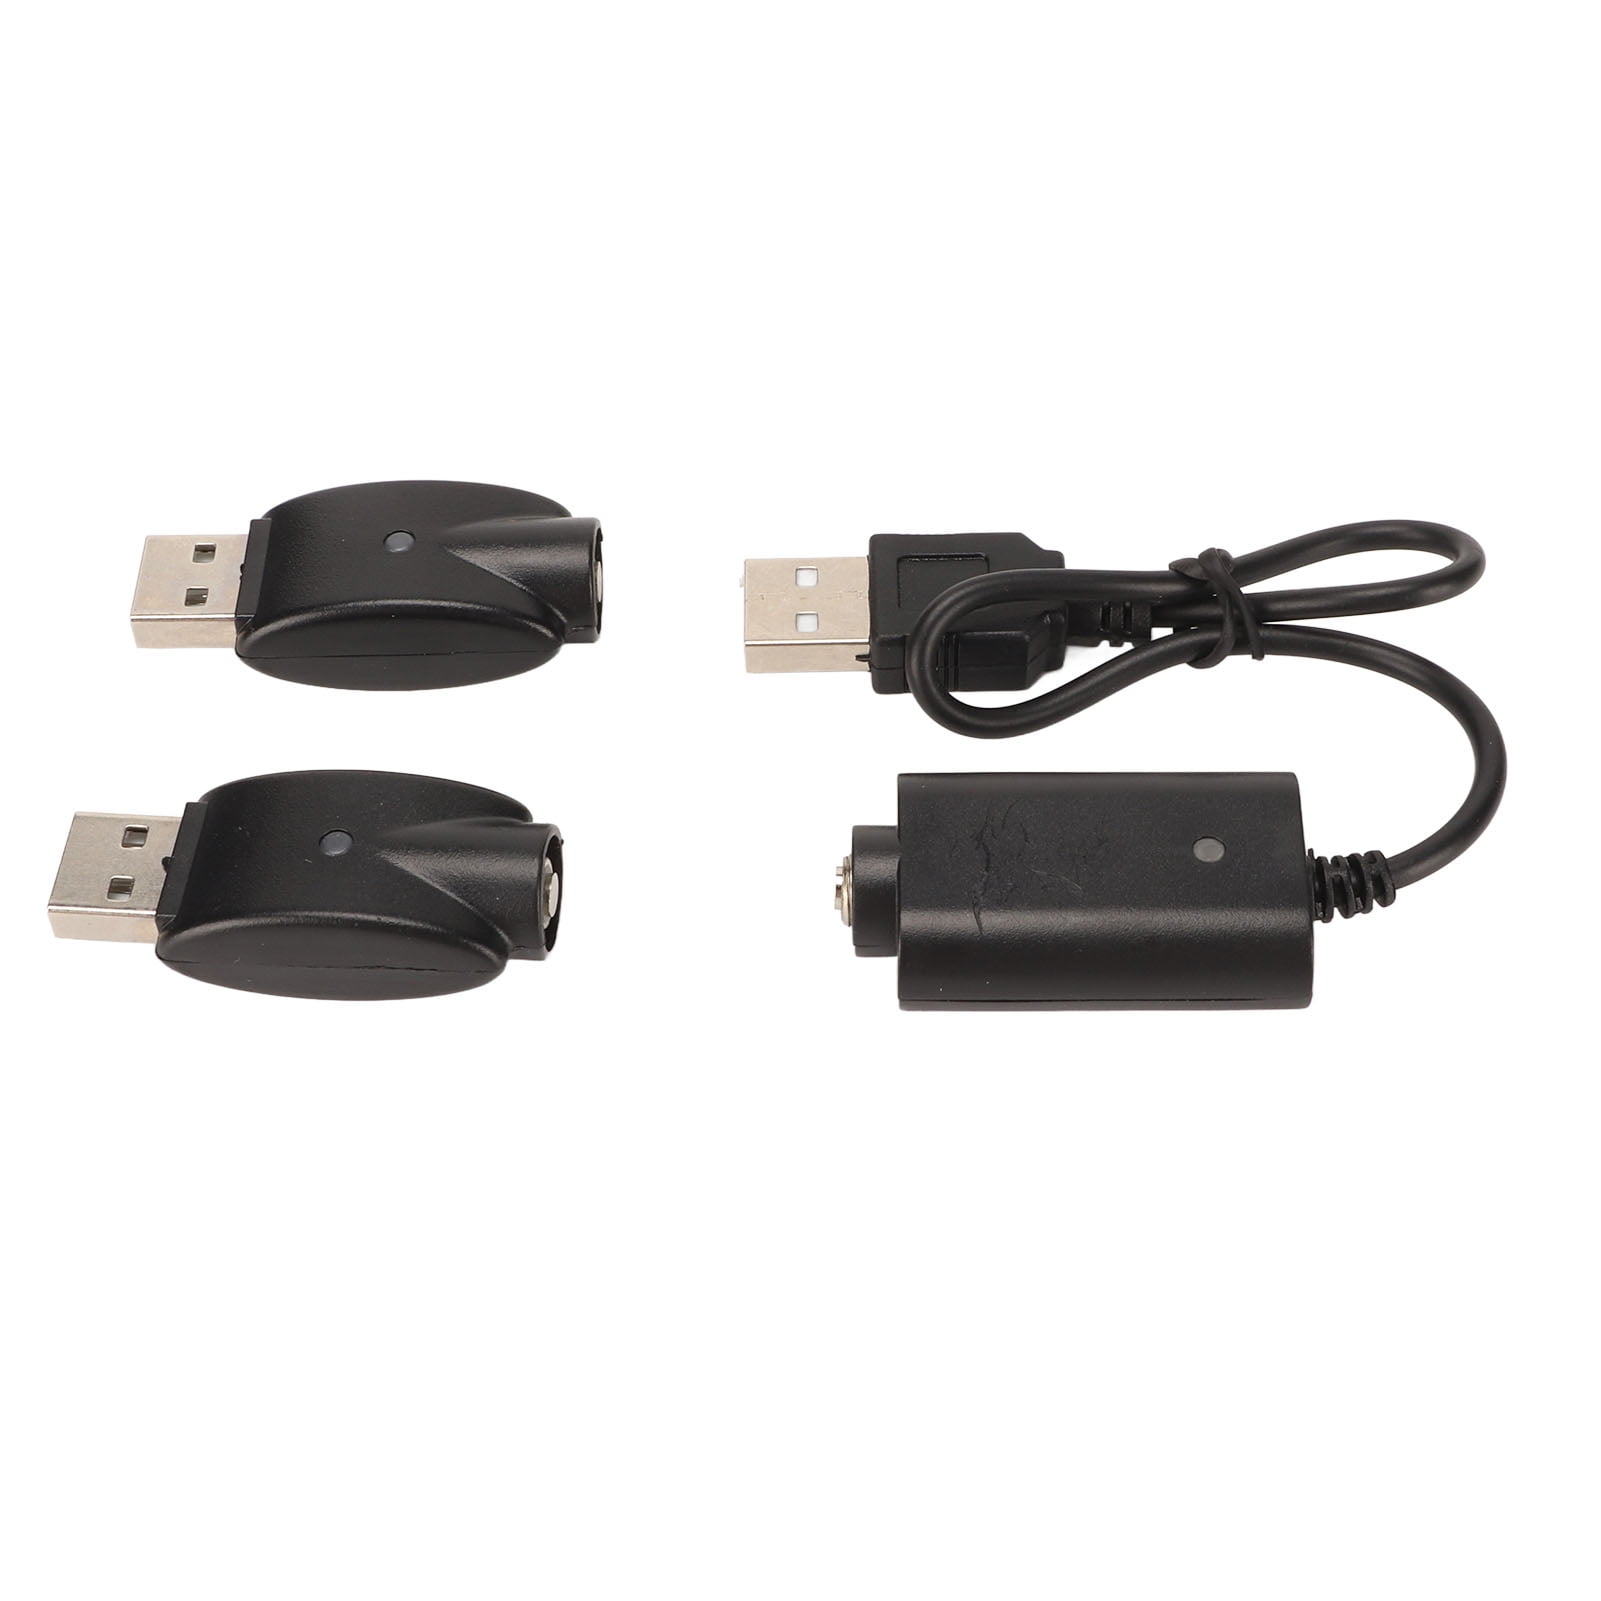 5V USB Netzteil (USB 2.0, TypA) — Syncronice